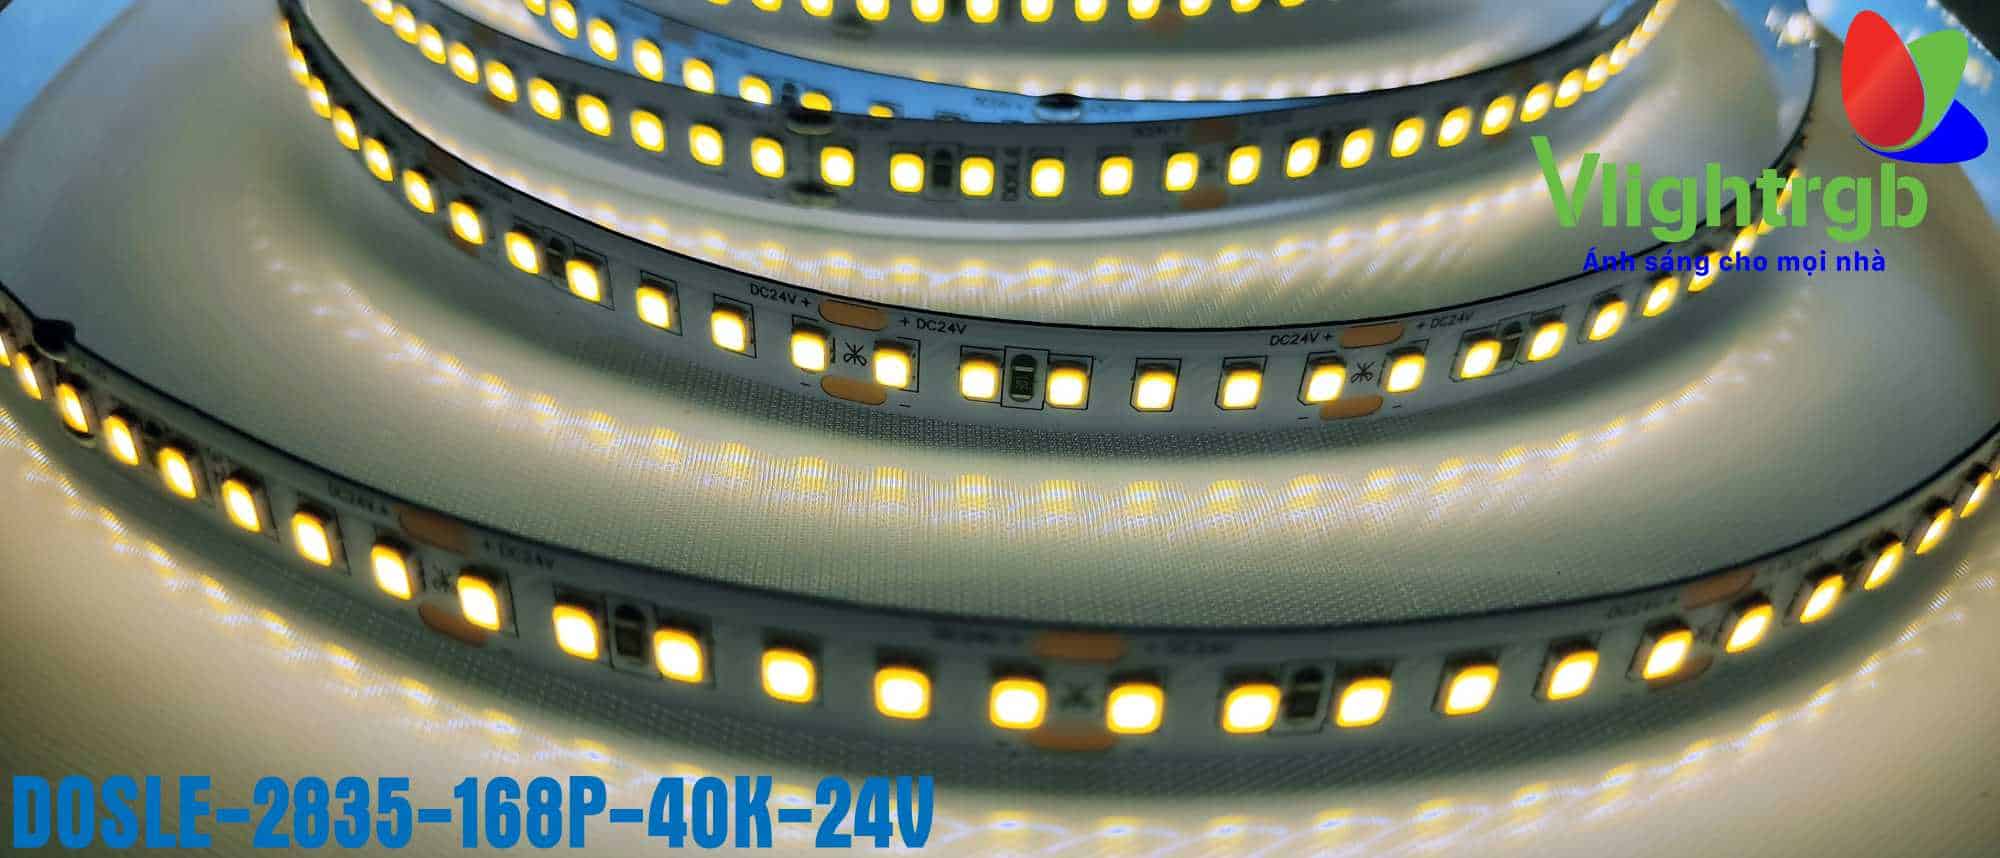 Đèn led dây dán Dosle 24V 168 led sáng trung tính 40K